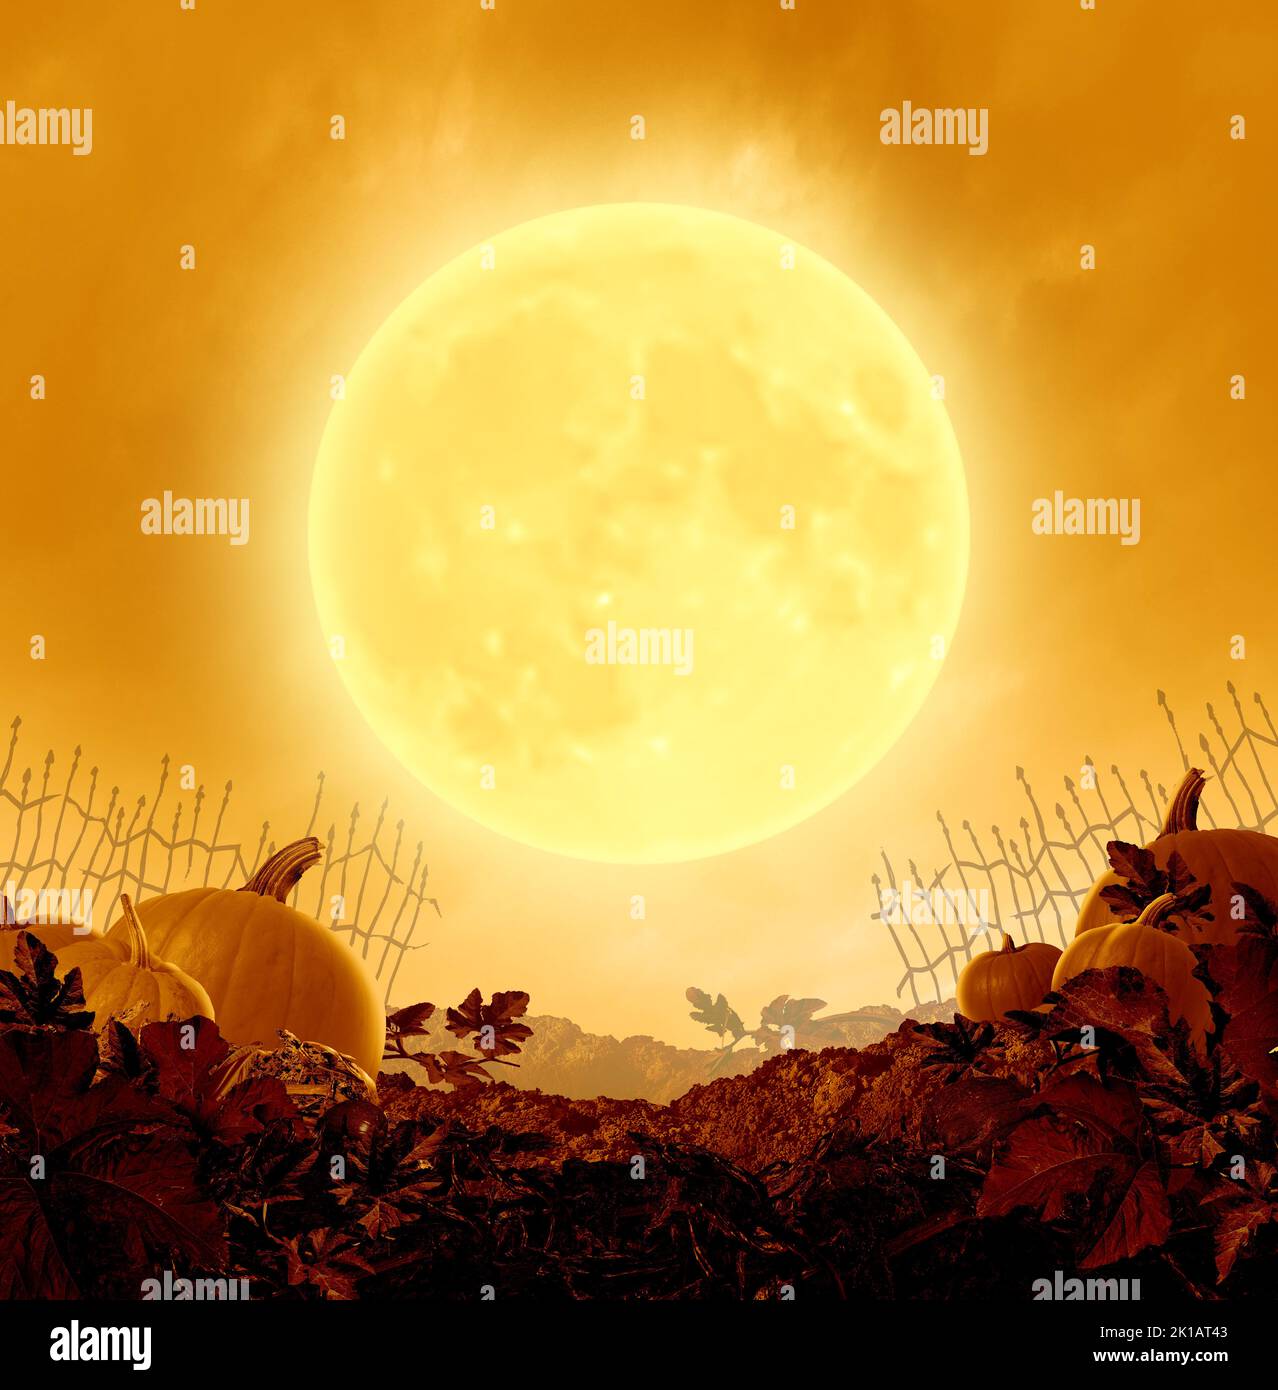 Halloween-Nachtposter und Herbstparty-Hintergrund mit einem orangefarbenen Mond, der auf einem grungigen alten gruseligen Kürbis-Patch im 3D-Illustrationsstil leuchtet. Stockfoto